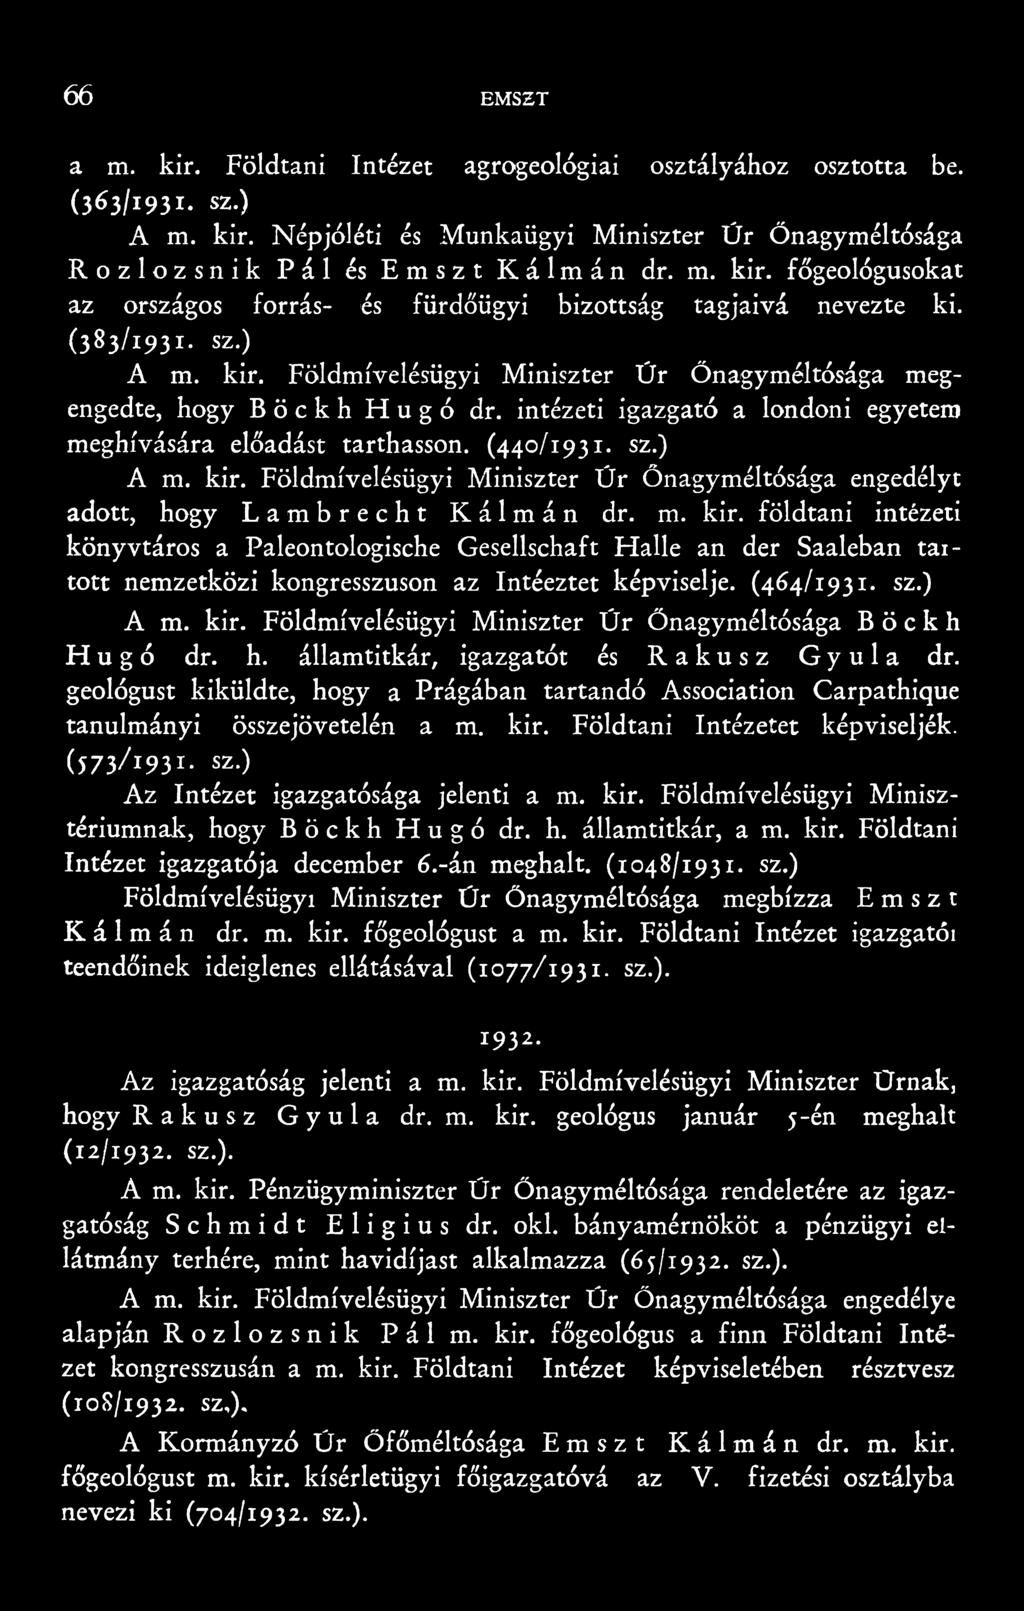 m. kir. földtani intézeti könyvtáros a Paleontologische Gesellschaft Halle an der Saaleban taitott nemzetközi kongresszuson az Intéeztet képviselje. (464/1931. sz.) A m. kir. Földmívelésügyi Miniszter Úr Őnagyméltósága Böckh Hugó dr.